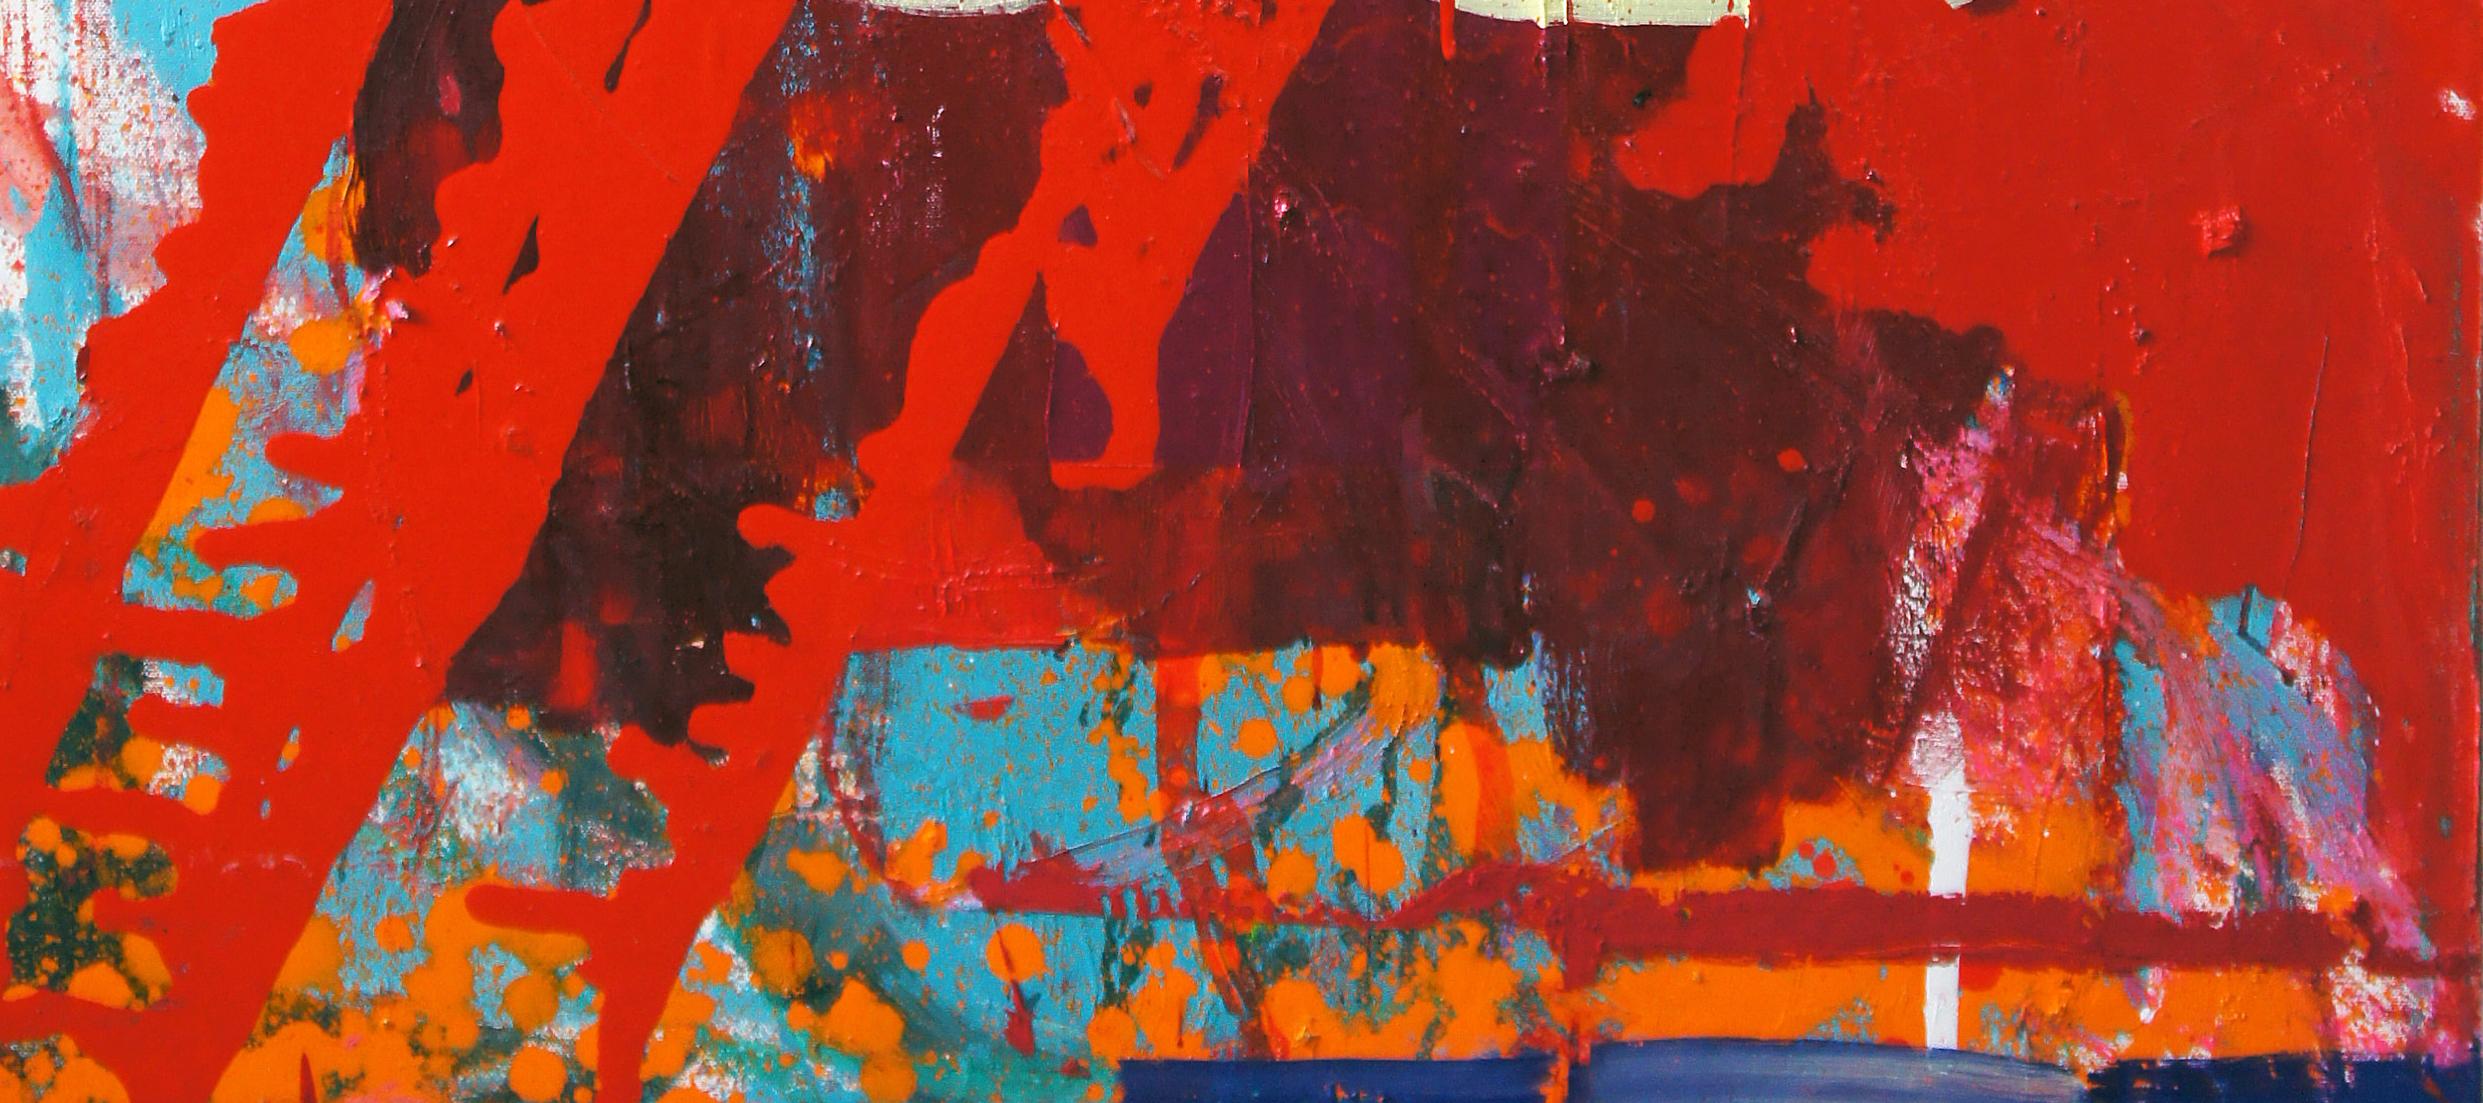 Red Lightning, peinture abstraite contemporaine sur toile d'une artiste japonaise - Abstrait Painting par Yukari Edamitsu